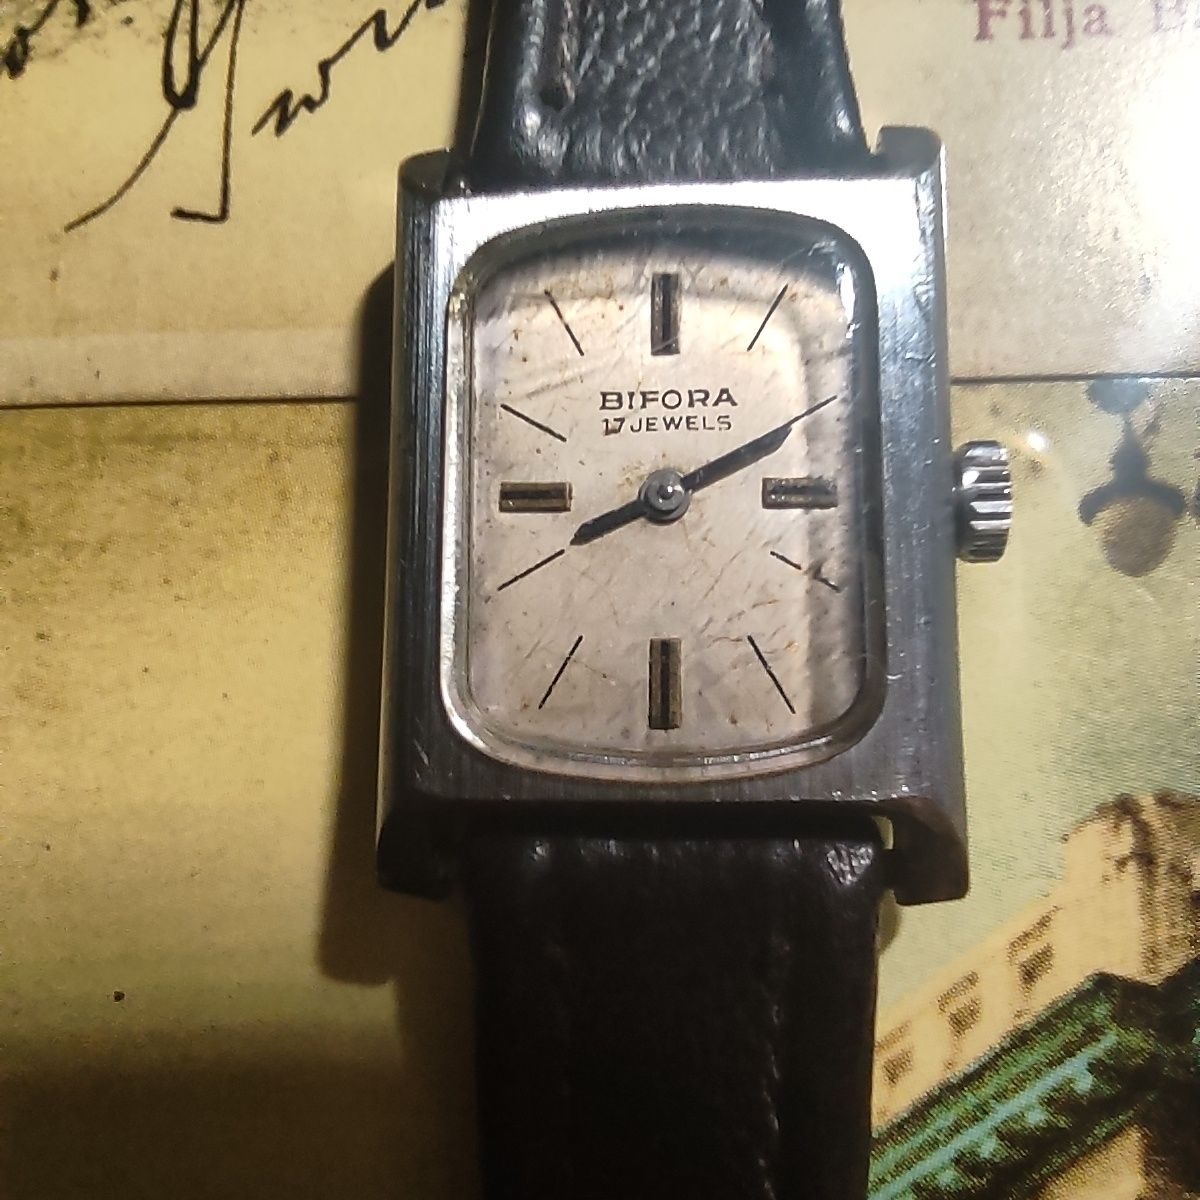 Niemiecki zegarek Bifora 17 jewels lata 70/80